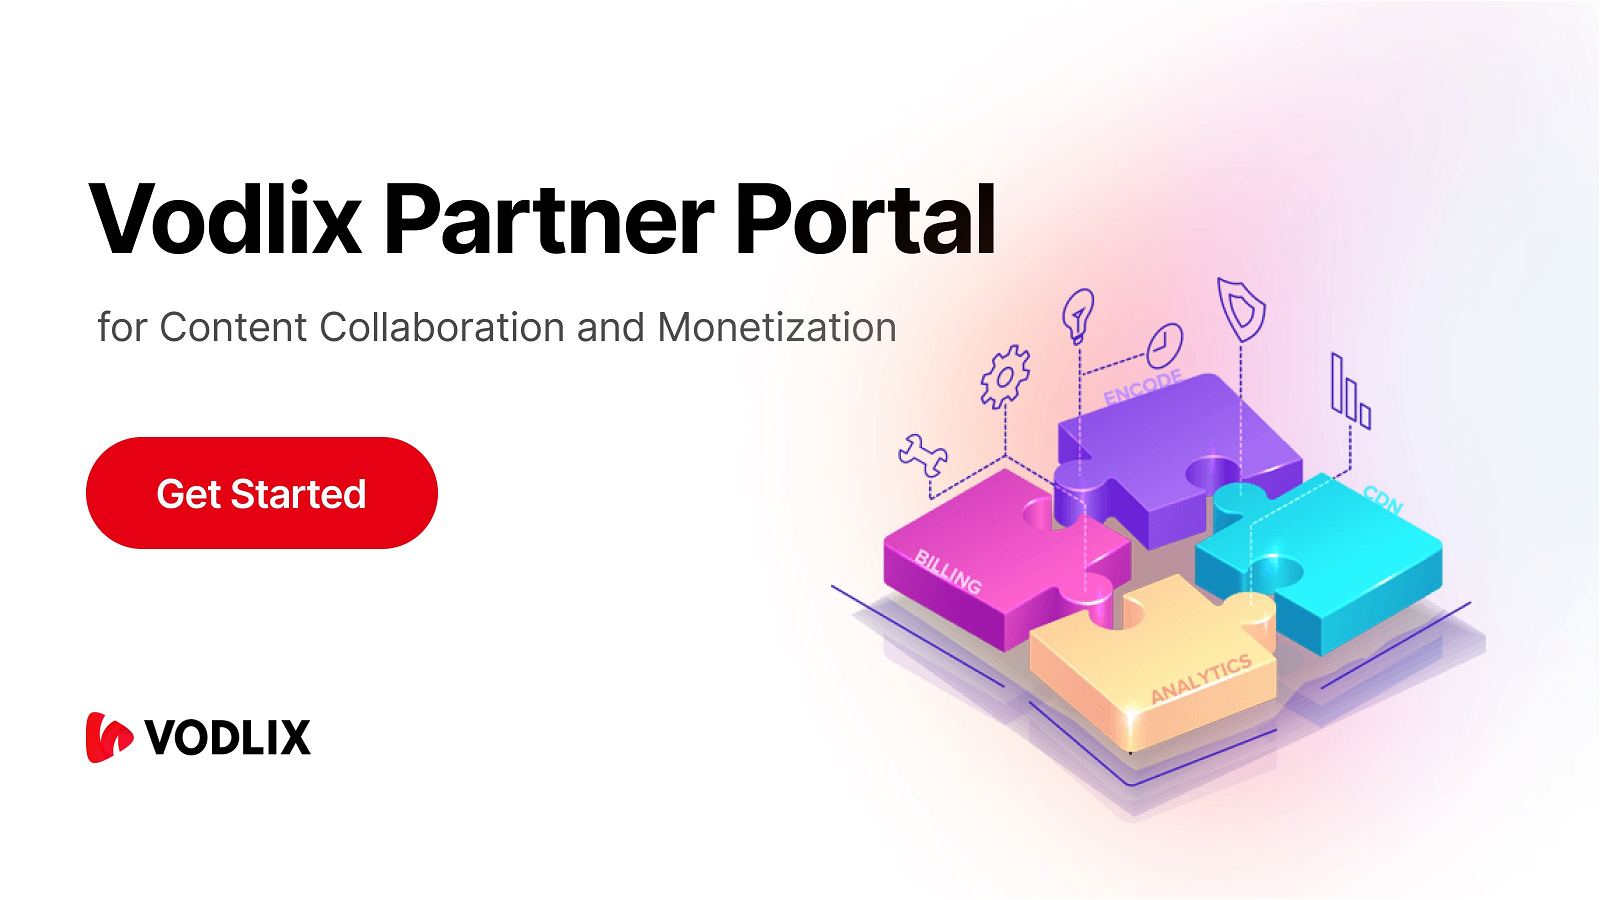 Vodlix Partner Portal